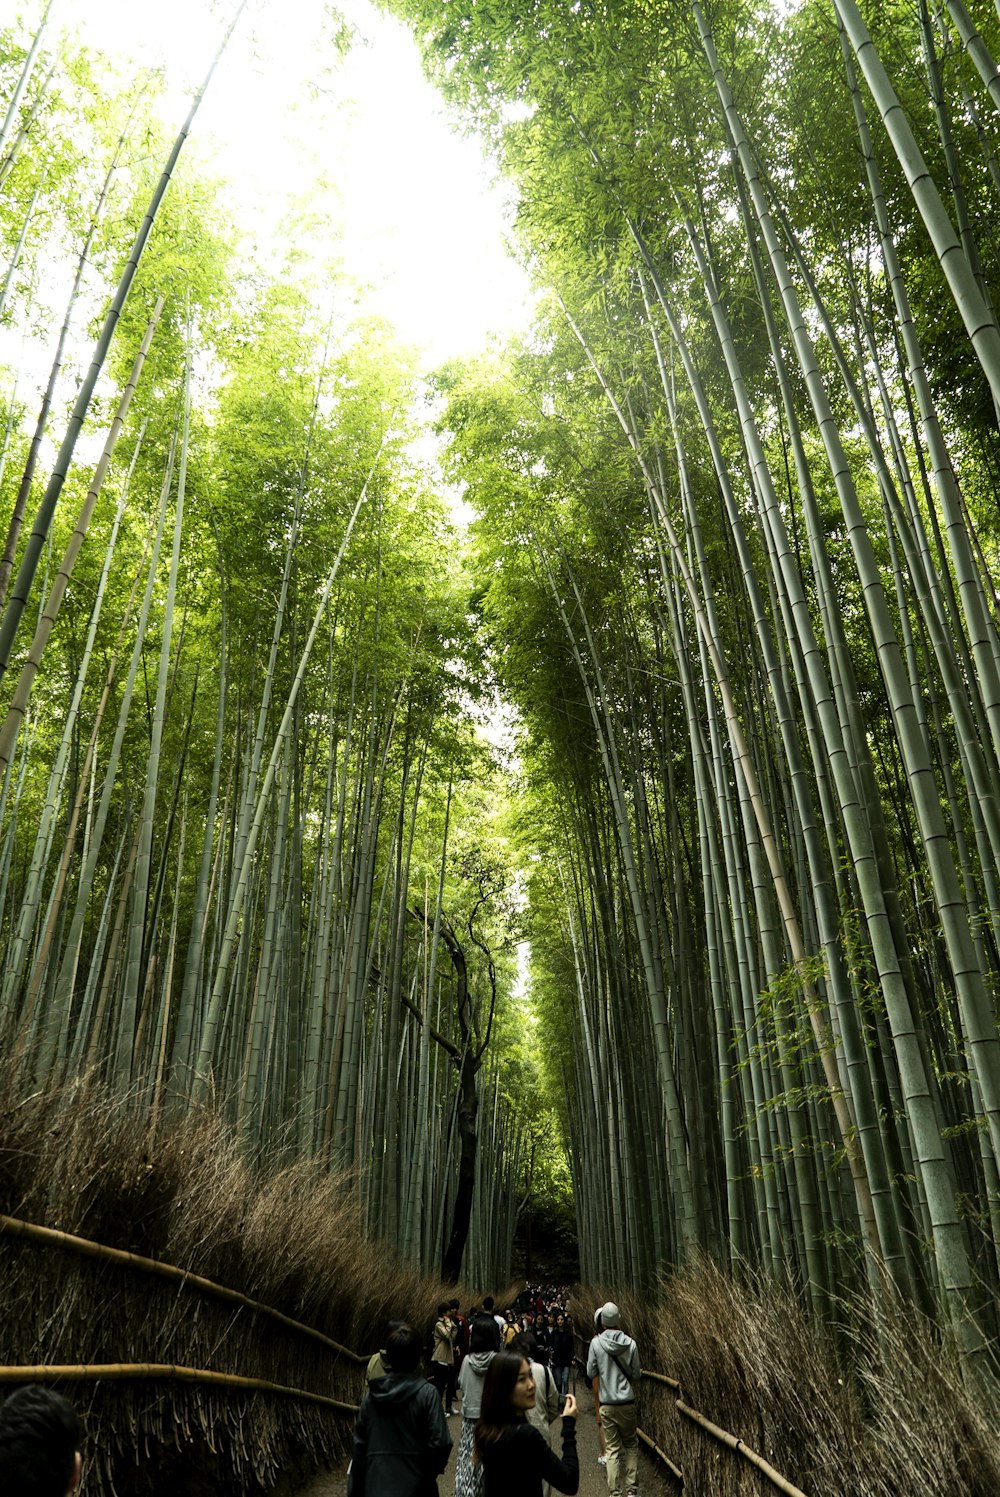 persone che camminano tra i bambù